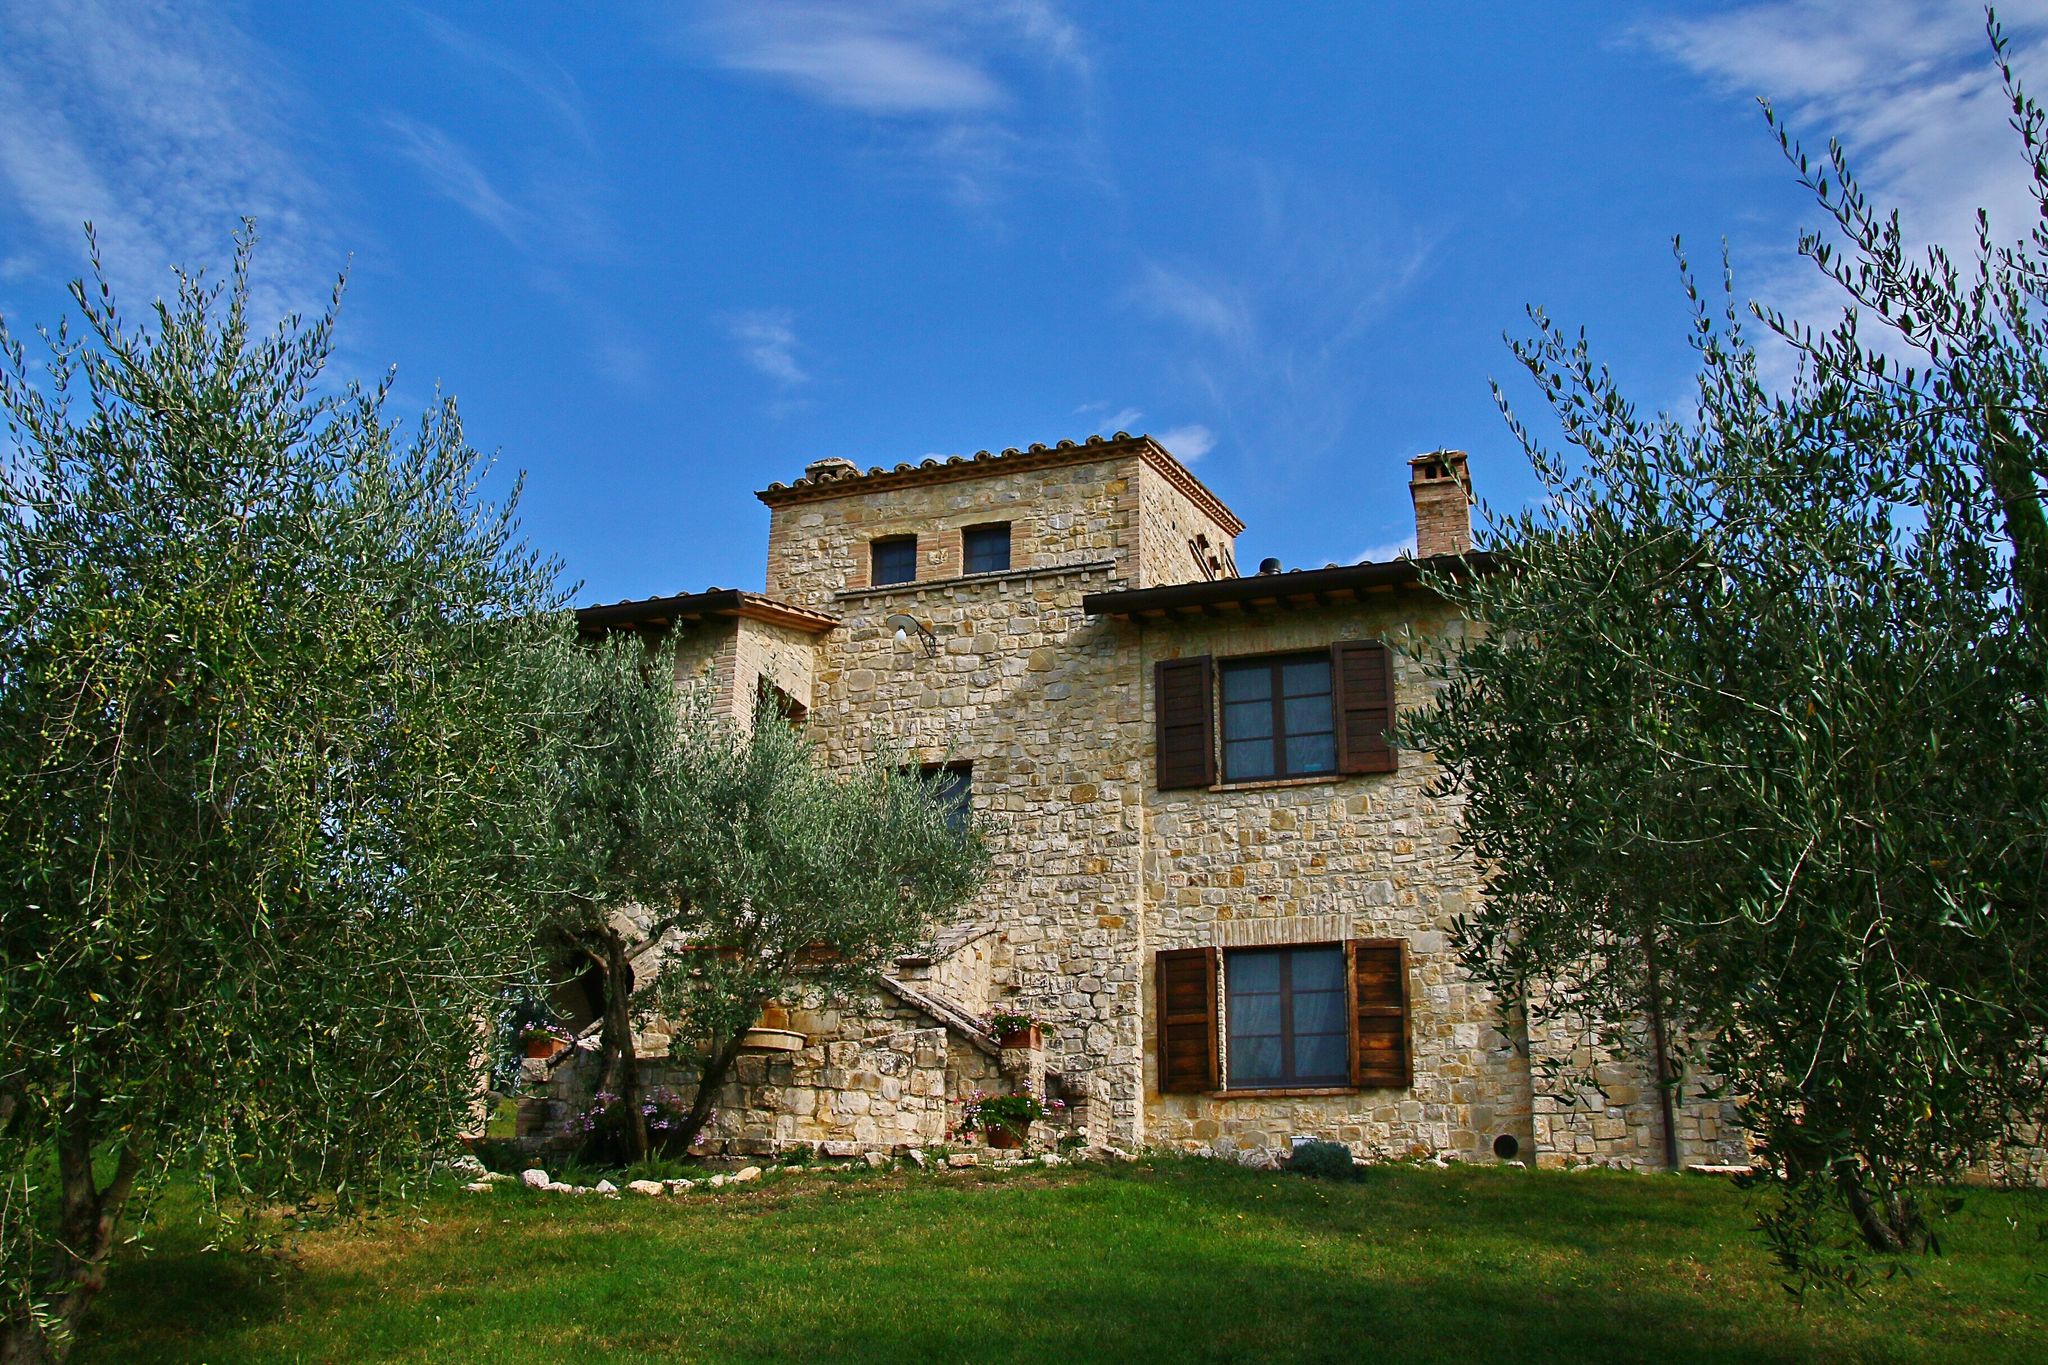 Schön Landhaus inmitten von Olivenbäumen, einen privaten Pool, Wellnesscenter